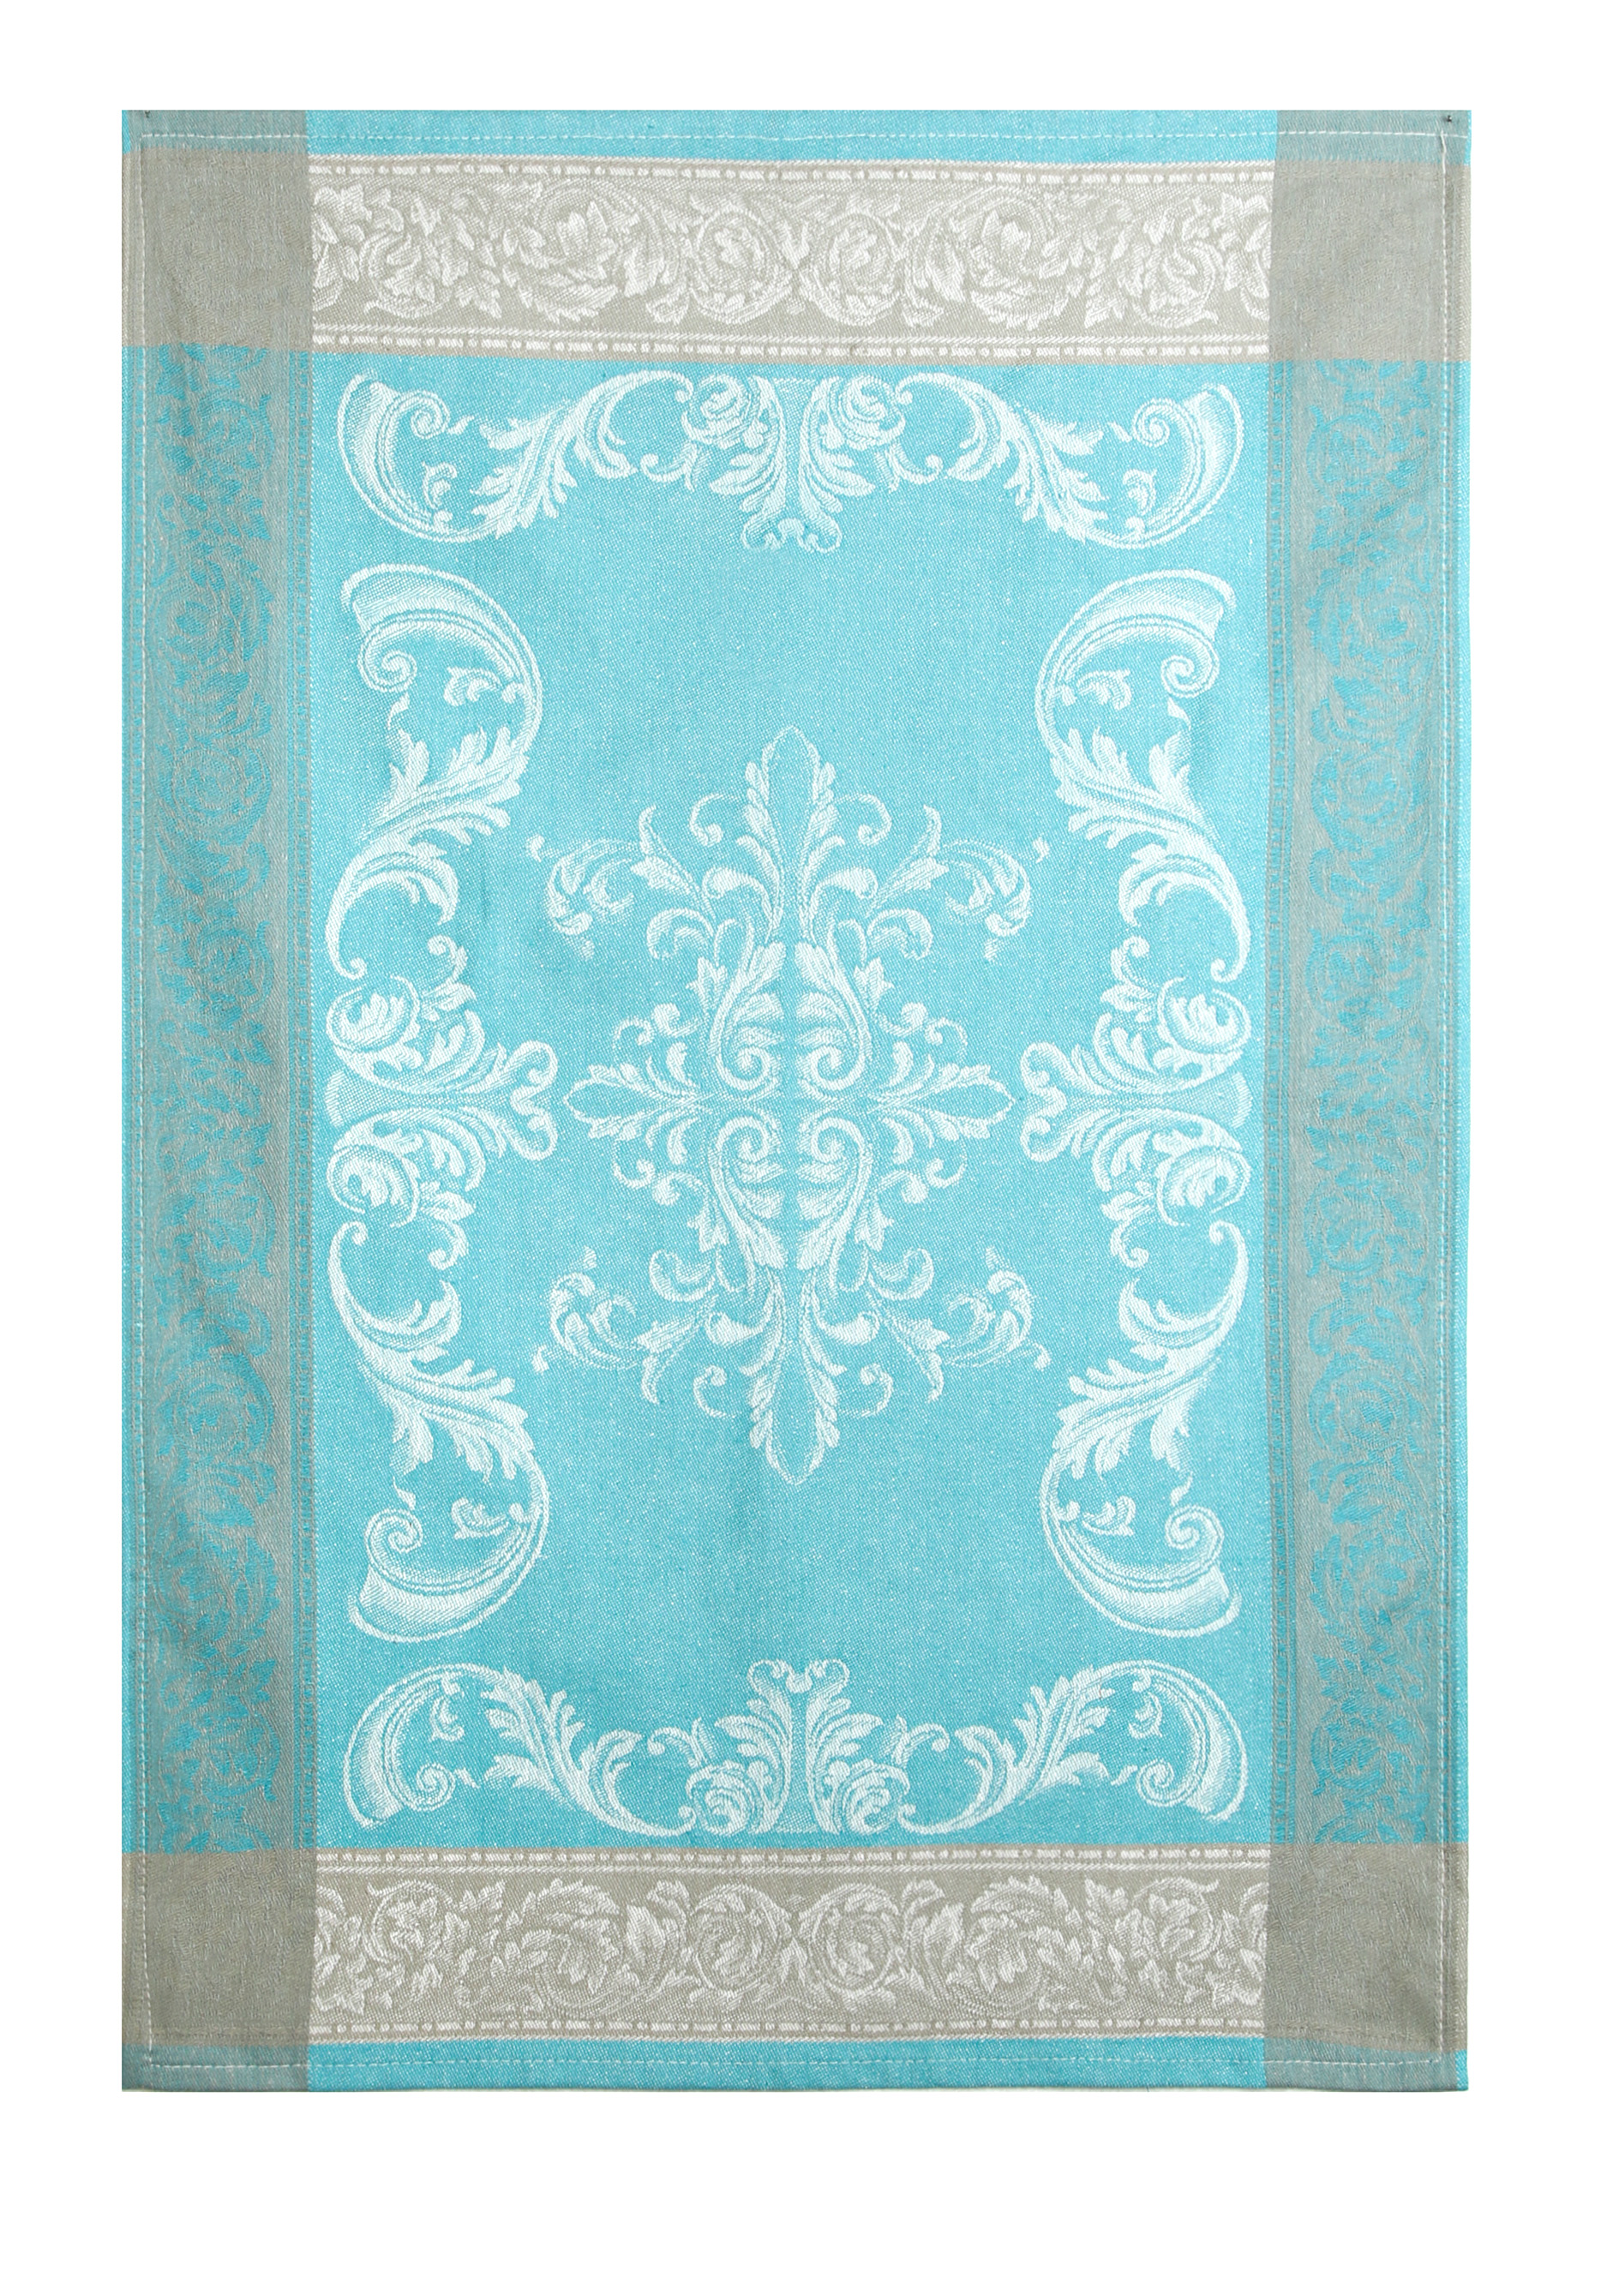 Полотенца вафельные, 3 шт. + подарок Василиса, цвет голубой, размер 45*59 - фото 10